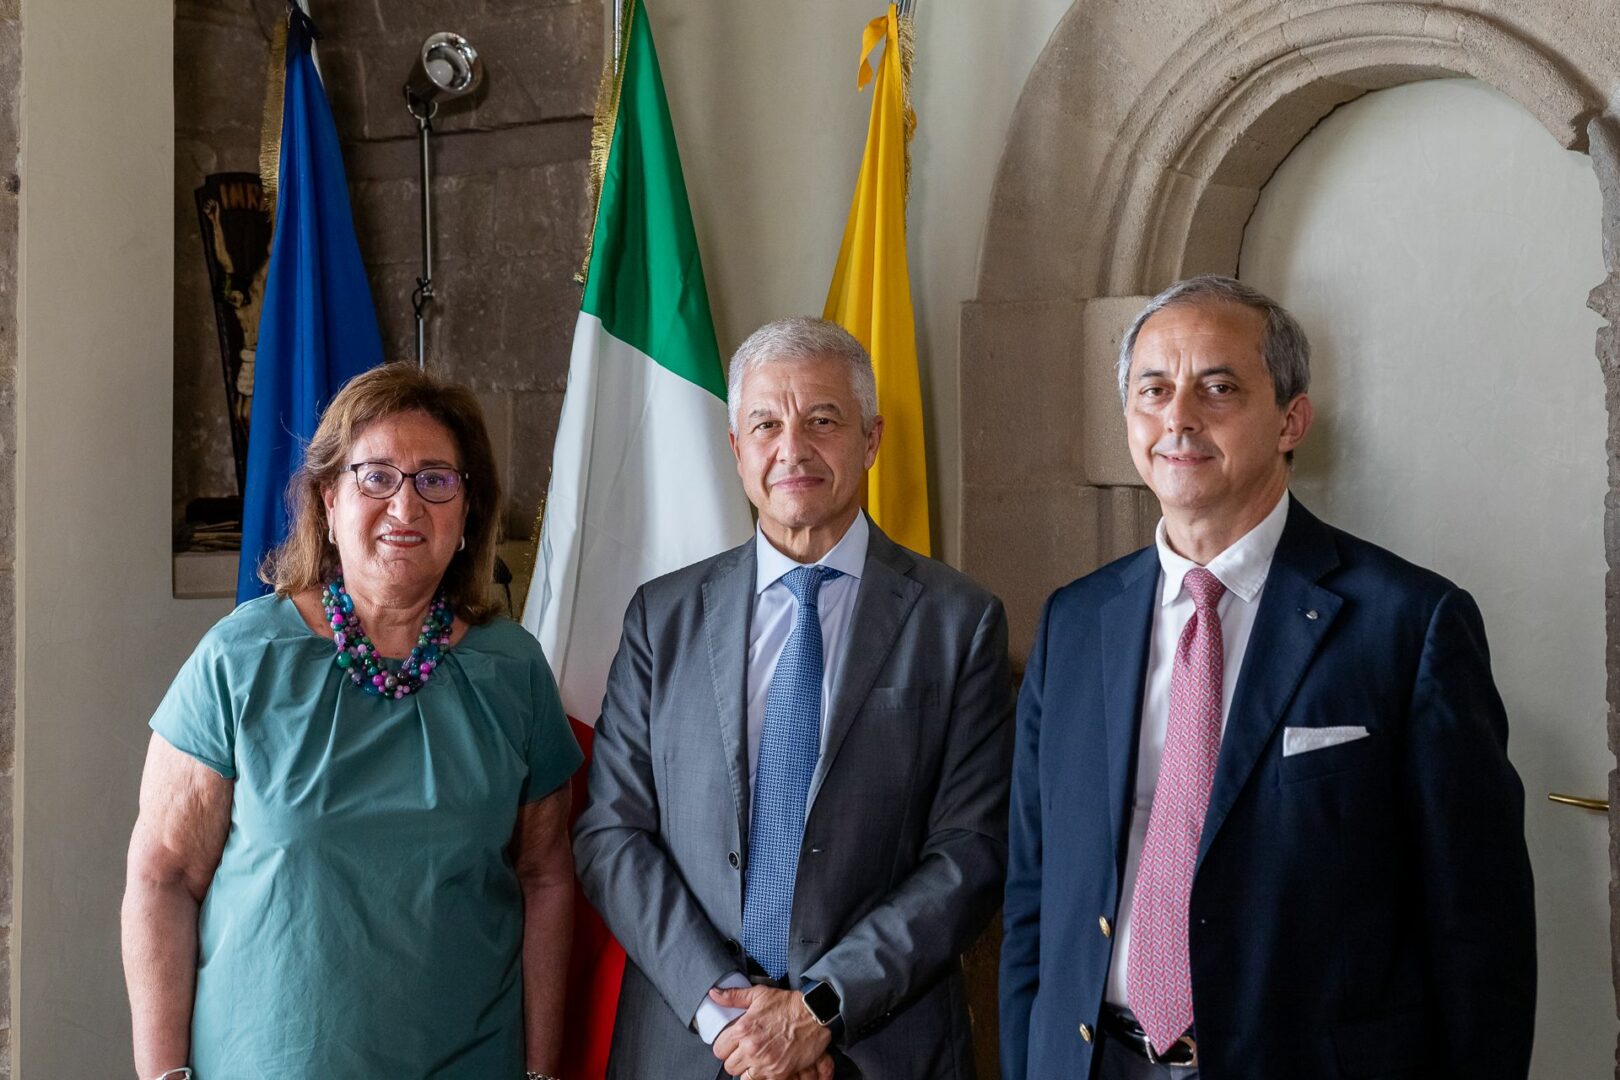 Università di Palermo e Agenzia delle Entrate insieme per formazione e promozione della legalità